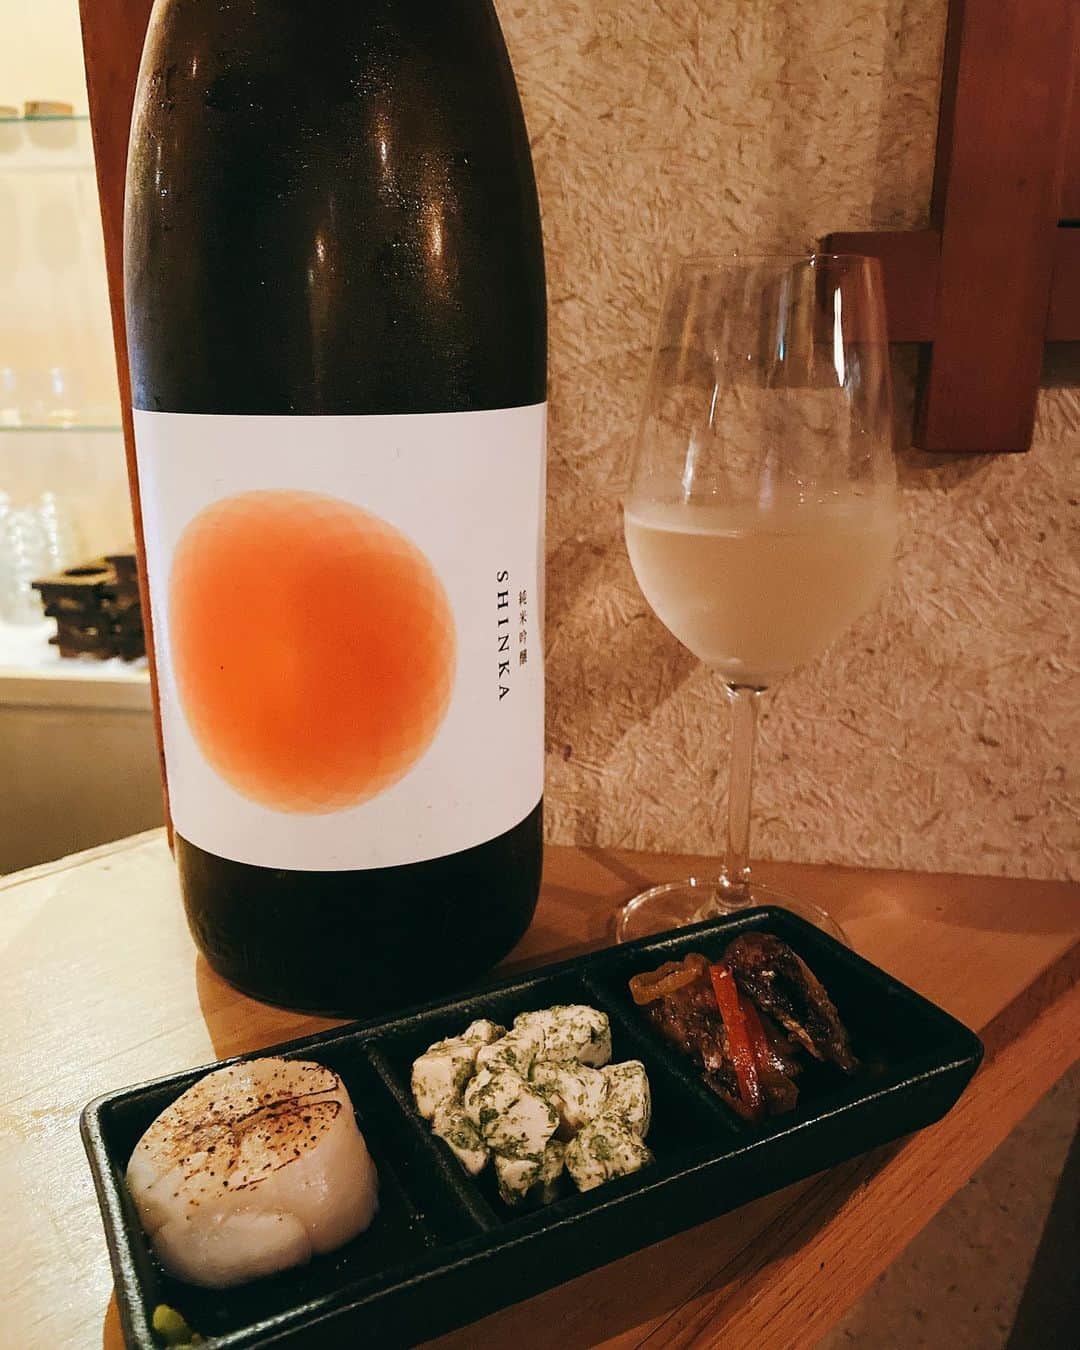 FukamizuYukina さんのインスタグラム写真 - (FukamizuYukina Instagram)「_ 渋谷にある日本酒ダイニング酒場 @sakeba.shibuya に行ってきたよ🍶💕 ㅤㅤㅤㅤㅤㅤㅤㅤㅤㅤㅤㅤㅤ ㅤㅤㅤㅤㅤㅤㅤㅤㅤㅤㅤㅤㅤ 『TEHAJIME』は果実のような日本酒で アルコール度数8%と低めだから 日本酒をはじめて飲む方にもすごく おすすめ☝🏻💓食前酒として頂いた🎶 ㅤㅤㅤㅤㅤㅤㅤㅤㅤㅤㅤㅤㅤ ㅤㅤㅤㅤㅤㅤㅤㅤㅤㅤㅤㅤㅤ 『 純米吟醸 SHINKA "阿波トロピカル" 』は トロピカルフルーツを思わせる香りが特徴🍊 ㅤㅤㅤㅤㅤㅤㅤㅤㅤㅤㅤㅤㅤ ㅤㅤㅤㅤㅤㅤㅤㅤㅤㅤㅤㅤㅤ 『 純米吟醸 白麹仕込 TAIHAKU 』は 白麹特有の酸味が加わってすっきりとした味で 水みたいにすいすい飲んじゃう🥛💕 ㅤㅤㅤㅤㅤㅤㅤㅤㅤㅤㅤㅤㅤ ㅤㅤㅤㅤㅤㅤㅤㅤㅤㅤㅤㅤㅤ 『 純米吟醸 理系兄弟 』は酸味、甘味の バランスが良くて食中酒としてつくられた お酒🧮めっちゃ飲みやすかった🎶 ㅤㅤㅤㅤㅤㅤㅤㅤㅤㅤㅤㅤㅤ ㅤㅤㅤㅤㅤㅤㅤㅤㅤㅤㅤㅤㅤ 『 Bar 362+3 2018 』は京丹後の日本酒バー ［ Bar 362+3 ］でしか味わえない "究極のテロノワール"体験を商品化した 日本酒。とのこと。飲んだ感じ、辛口で 白ワインみたいで、スッキリ✨ ㅤㅤㅤㅤㅤㅤㅤㅤㅤㅤㅤㅤㅤ ㅤㅤㅤㅤㅤㅤㅤㅤㅤㅤㅤㅤㅤ お通しで、帆立の刺身・あおさのクリームチーズ・ 秋刀魚の南蛮漬けの3種類もきた🐟♡ ㅤㅤㅤㅤㅤㅤㅤㅤㅤㅤㅤㅤㅤ ㅤㅤㅤㅤㅤㅤㅤㅤㅤㅤㅤㅤㅤ あと、炙りトロ鯖を注文したよ💓 どれも美味しかったし、他にもメニュー たくさんあって迷った🤭🌀💫 ㅤㅤㅤㅤㅤㅤㅤㅤㅤㅤㅤㅤㅤ ㅤㅤㅤㅤㅤㅤㅤㅤㅤㅤㅤㅤㅤ カウンターと座席、テーブル席があって 女性同士のお客さんも多かった🚺💕 ㅤㅤㅤㅤㅤㅤㅤㅤㅤㅤㅤㅤㅤ ㅤㅤㅤㅤㅤㅤㅤㅤㅤㅤㅤㅤㅤ そしてなんとなんと😳‼️ 『 この投稿を提示でお会計10%OFF 』 になるので、よかったら使ってね💓 ㅤㅤㅤㅤㅤㅤㅤㅤㅤㅤㅤㅤㅤ ㅤㅤㅤㅤㅤㅤㅤㅤㅤㅤㅤㅤㅤ  #sakeba #渋谷日本酒 #日本酒 #日本酒バー #隠れ家 #ペアリング #japanesesake #sakeba渋谷 #pr #トリドリベース」9月22日 20時15分 - peitaro72